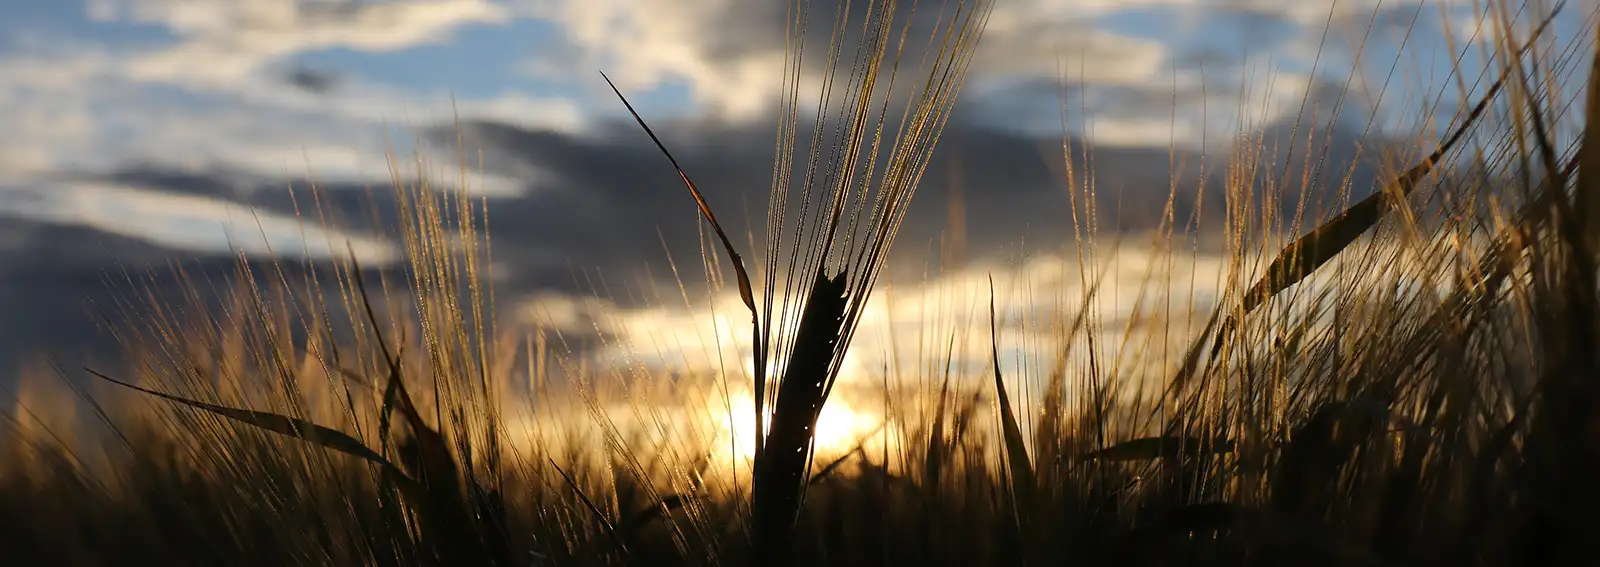 Gros plan d'un champ de blé avec un coucher de soleil en arrière-plan.